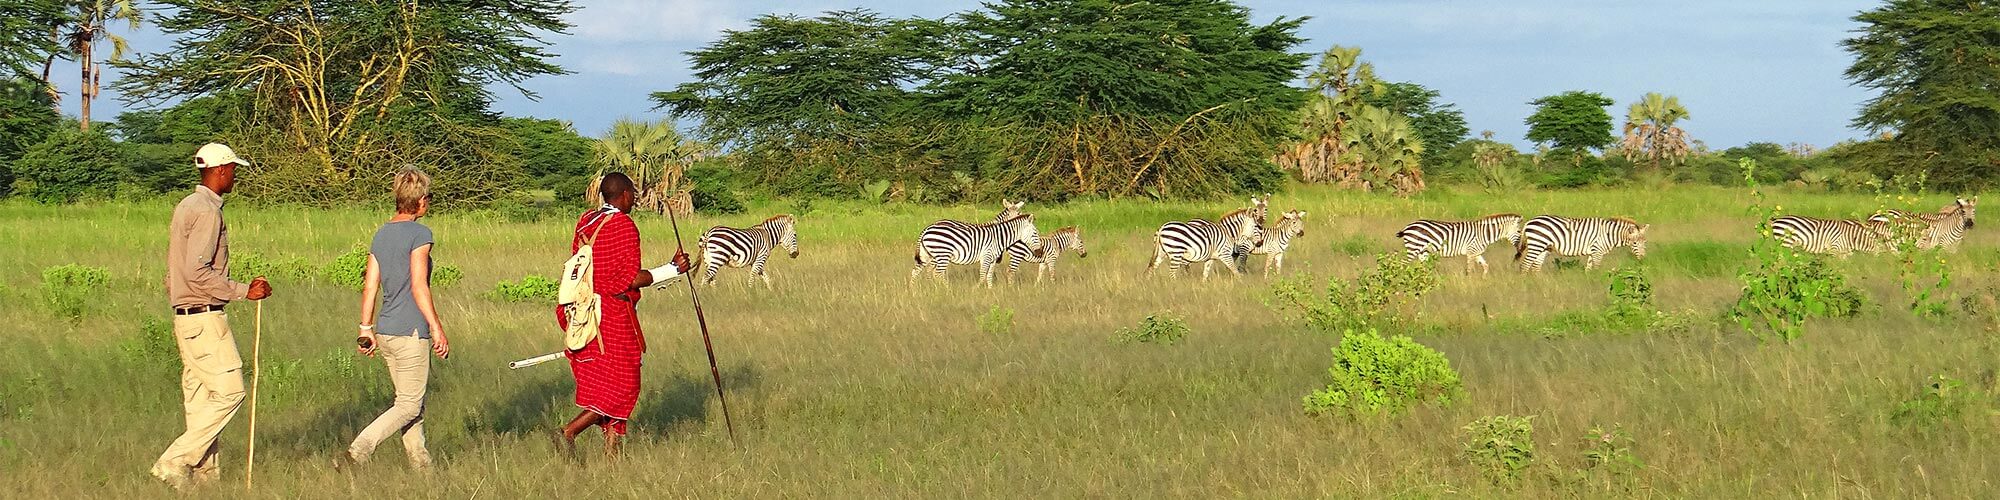 Safari in Tanzania - erlebnisreiche Naturreise